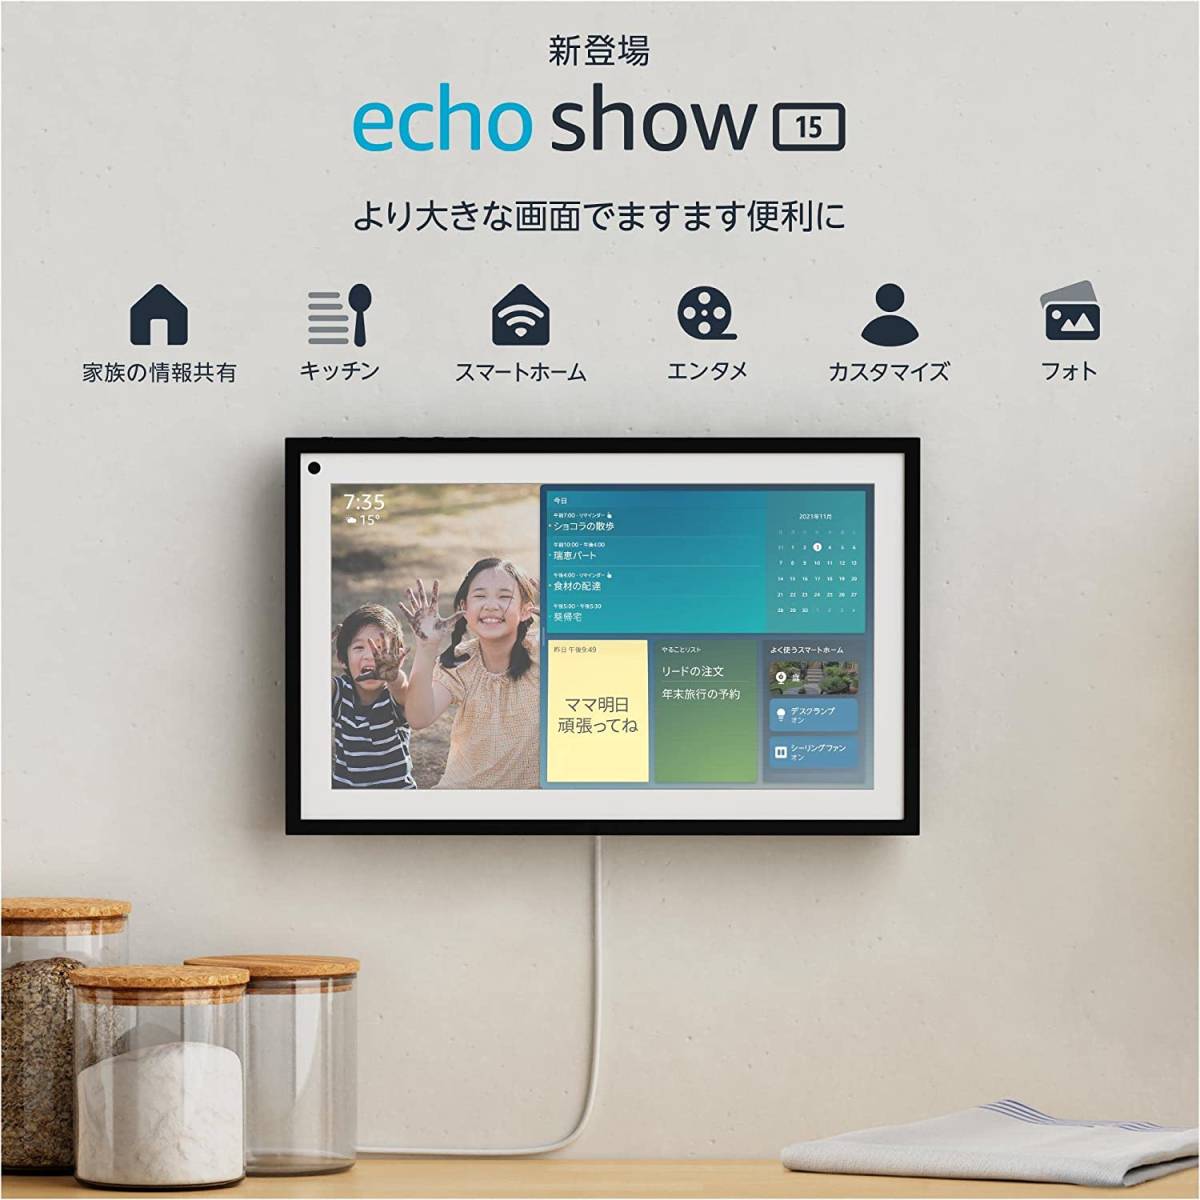 PC/タブレット タブレット Echo Show 15 (エコーショー15) - 15.6インチフルHDスマート 